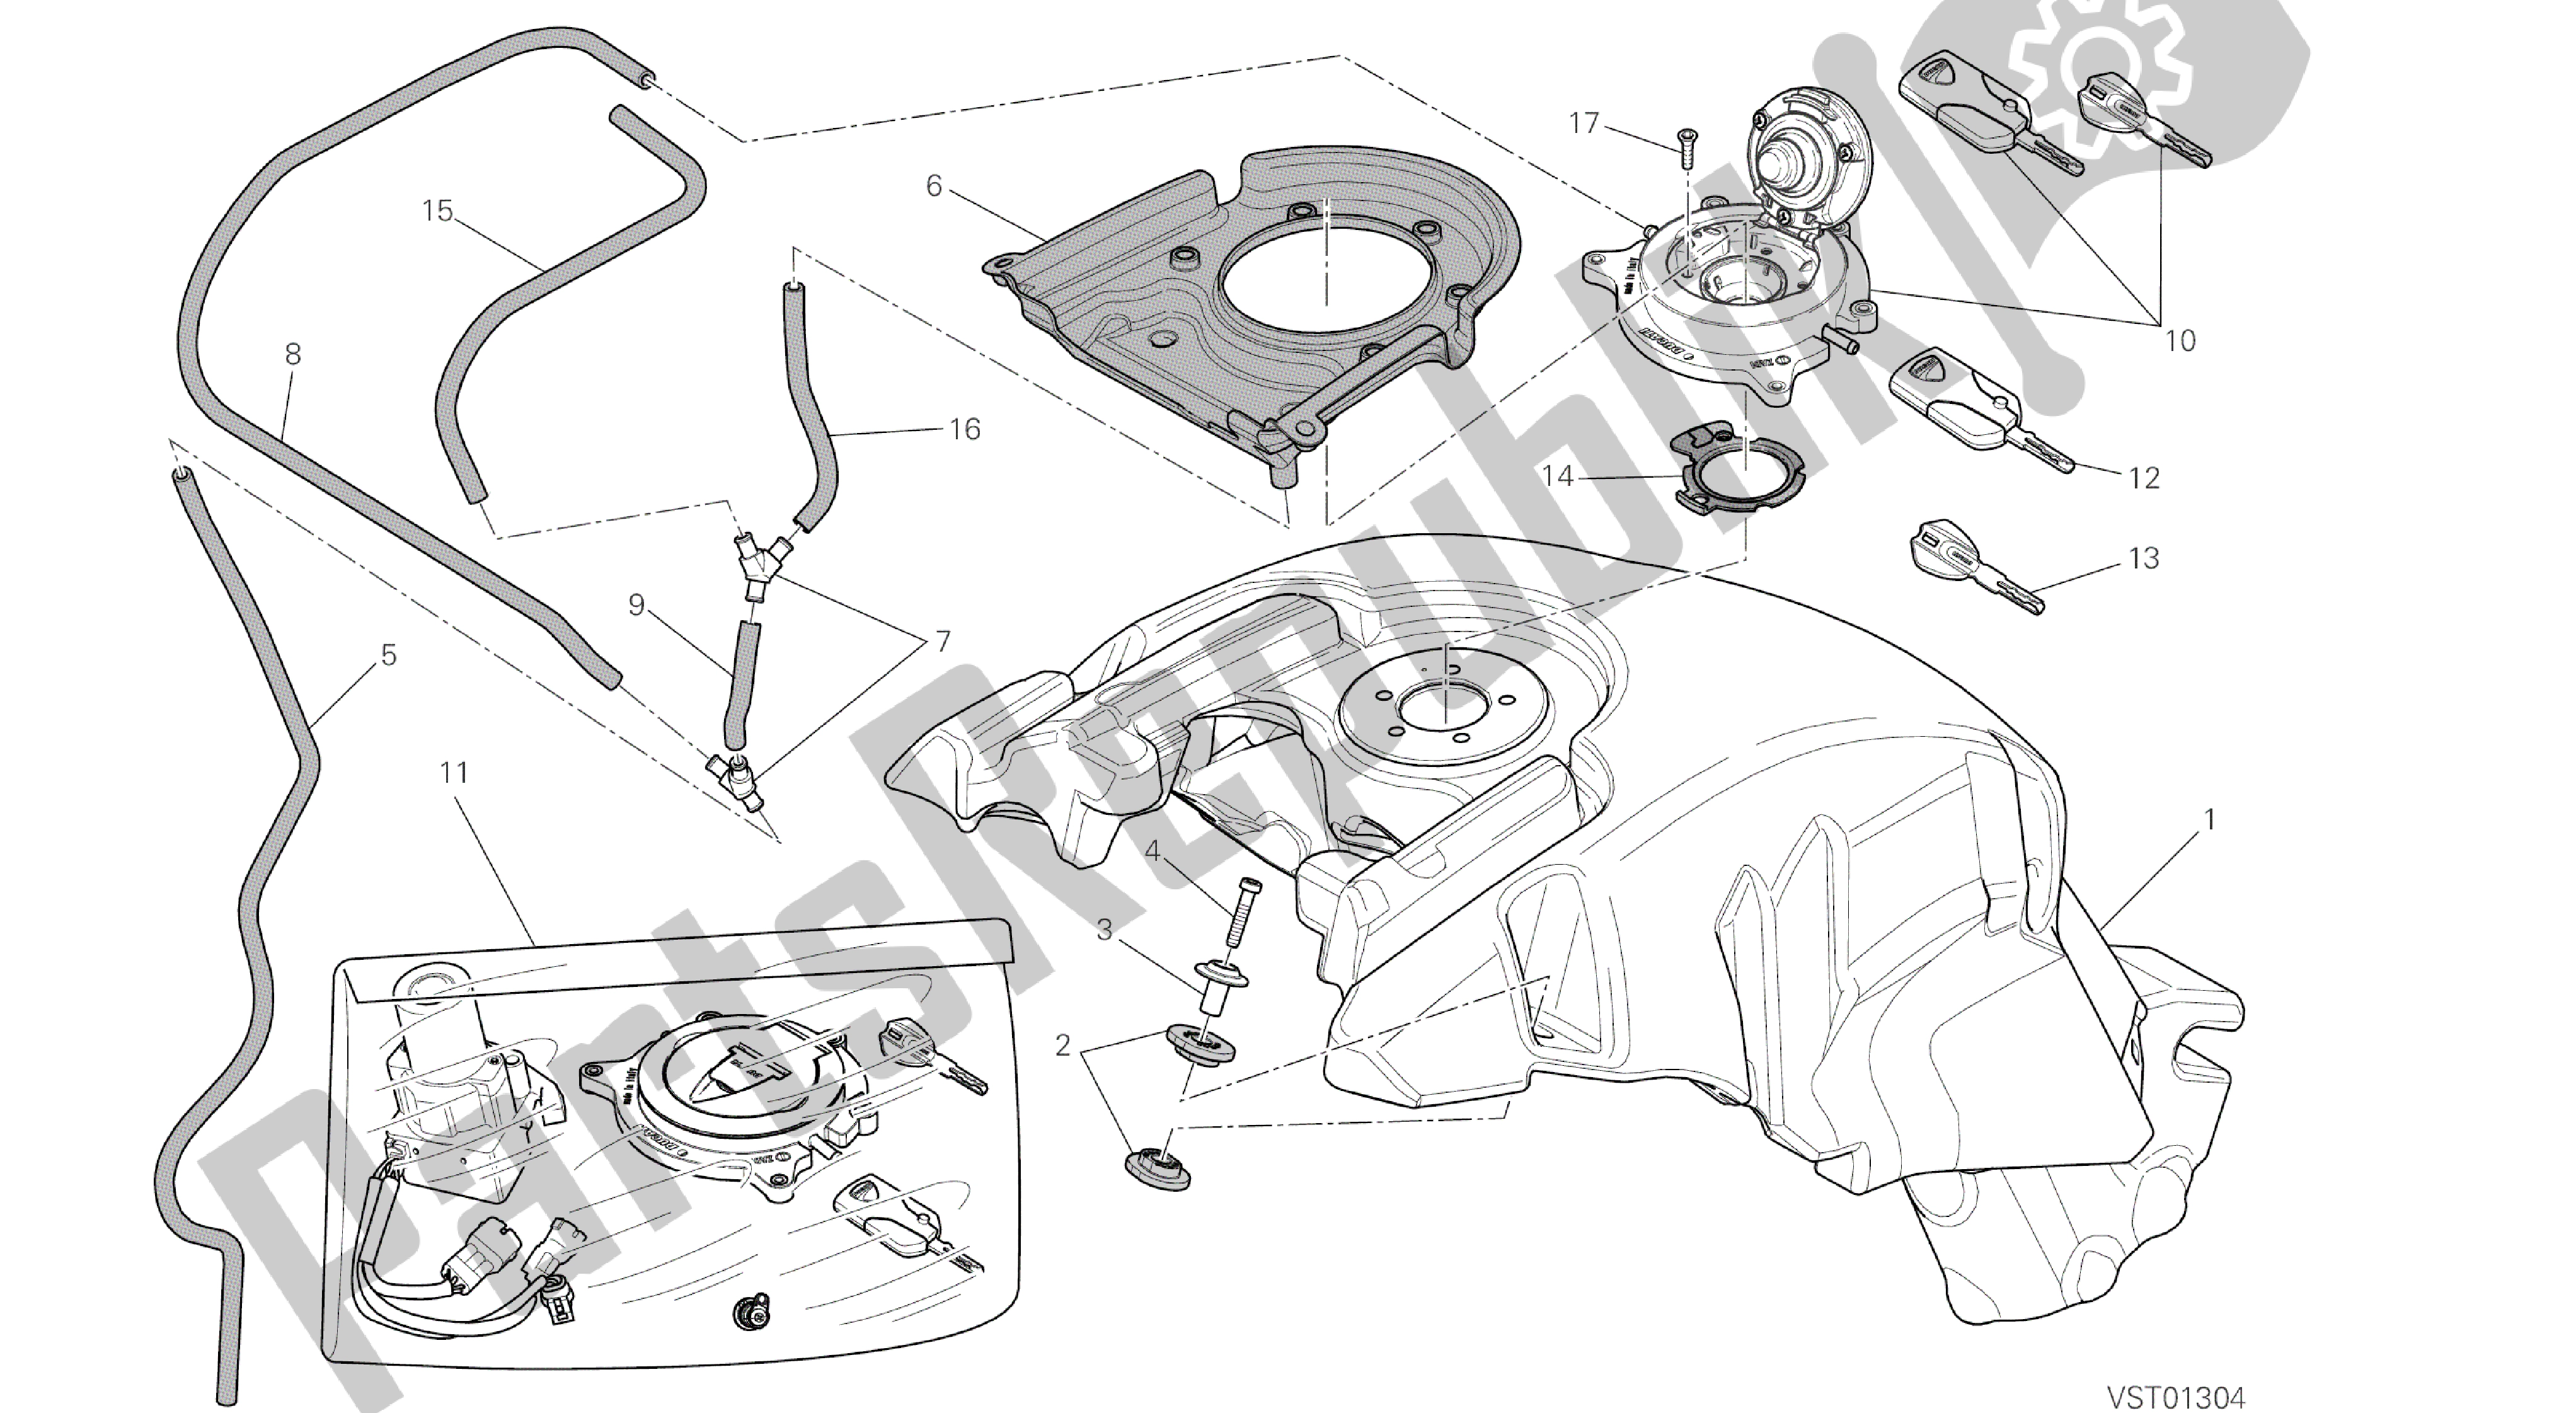 Todas las partes para Dibujo 032 - Tanque De Combustible [mod: Dvl; Xst: Marco De Grupo Aus, Eur, Fra, Jap, Tha] de Ducati Diavel 1200 2016